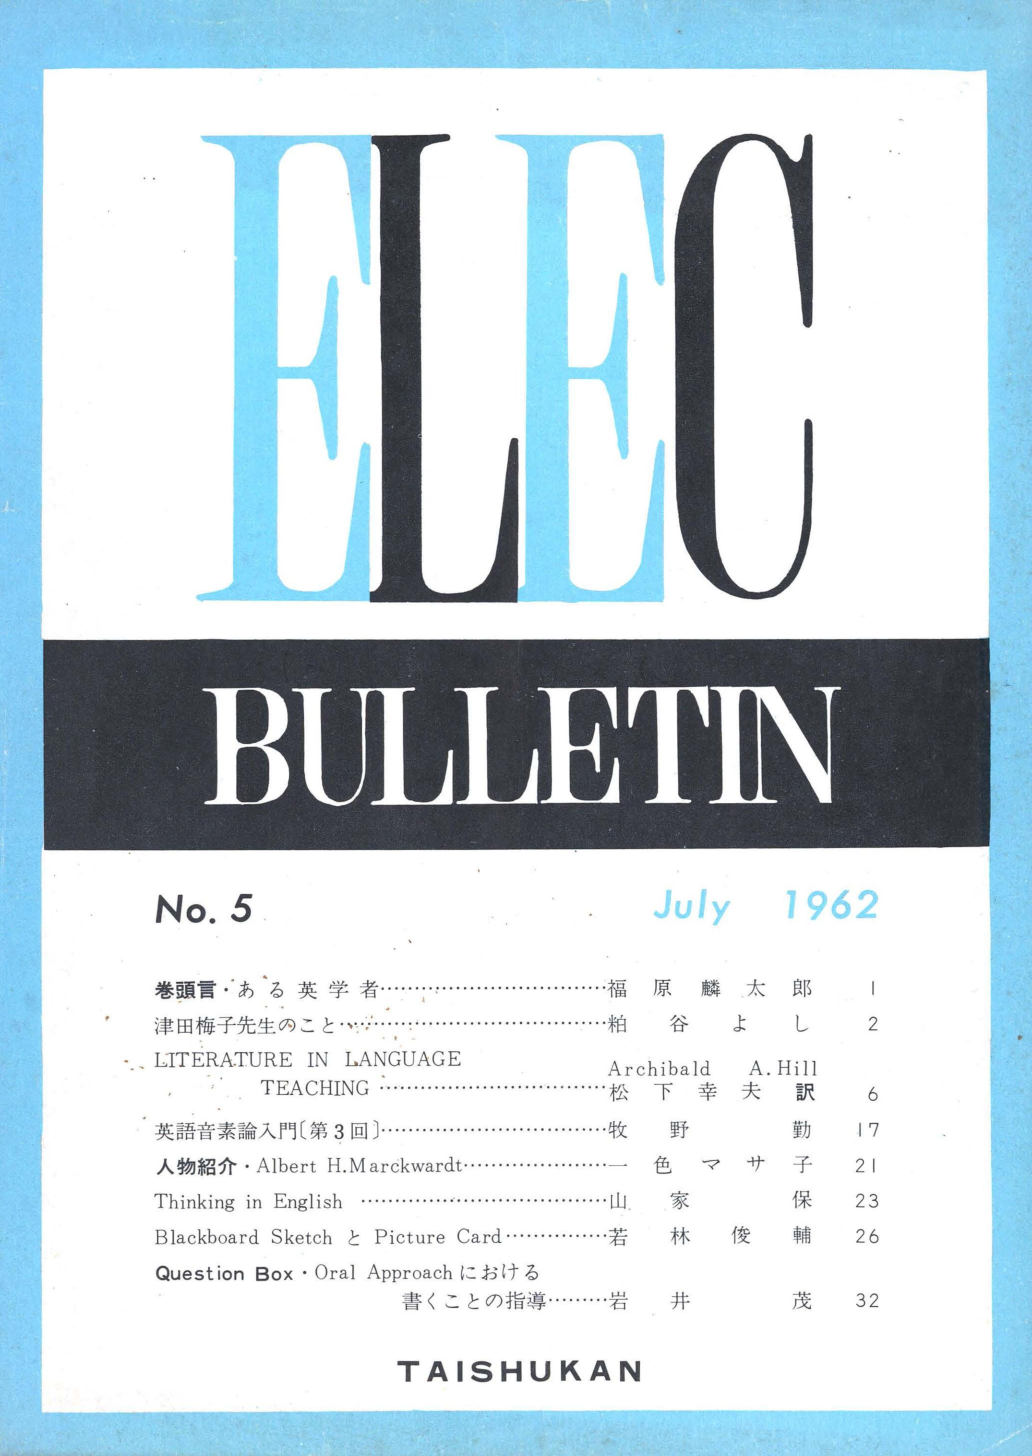 ELEC BULLETIN No. 5　July 1962